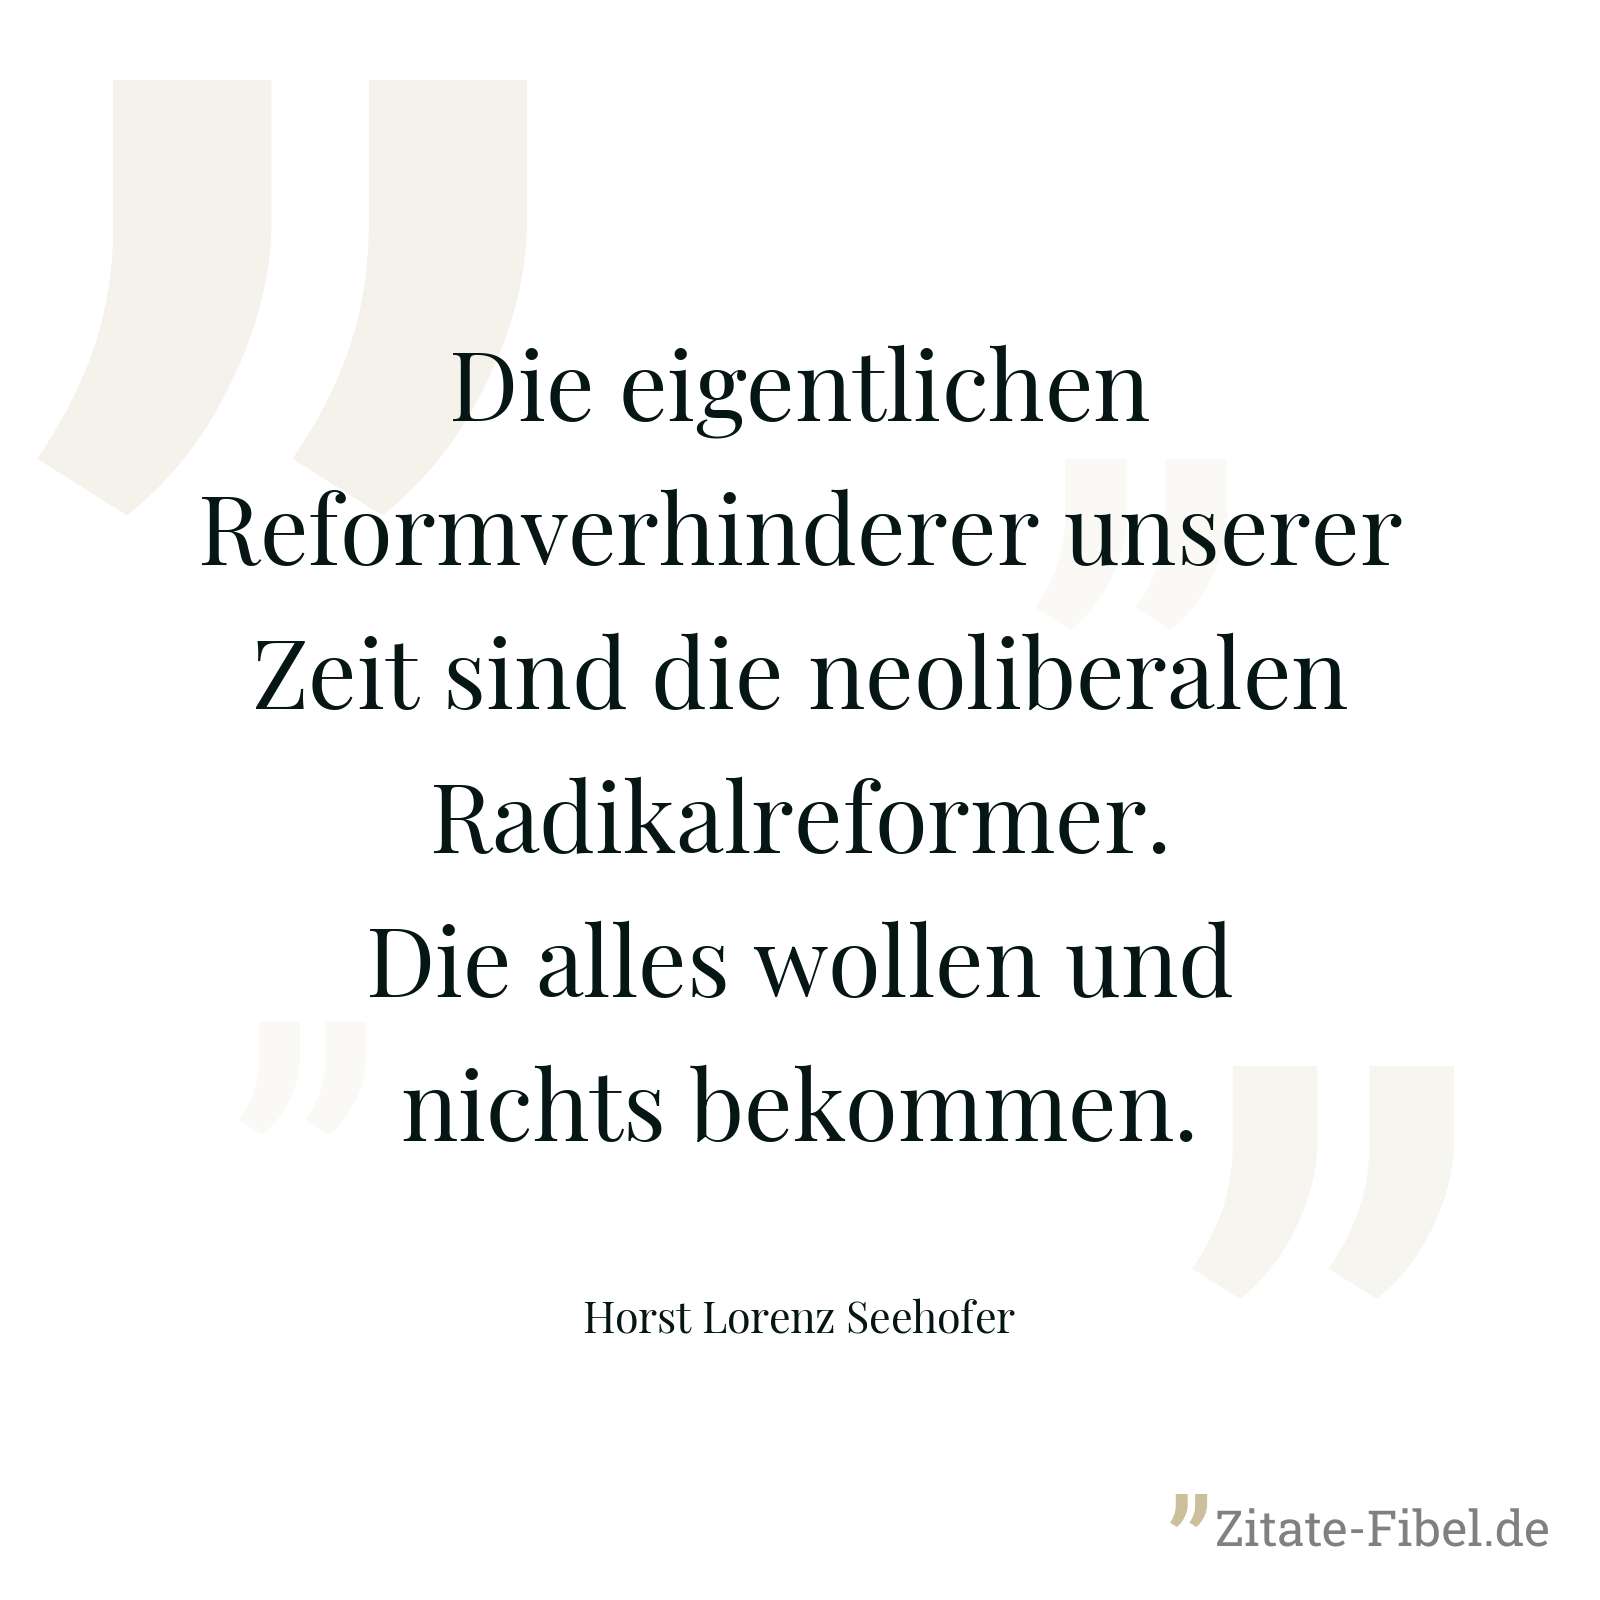 Die eigentlichen Reformverhinderer unserer Zeit sind die neoliberalen Radikalreformer. Die alles wollen und nichts bekommen. - Horst Lorenz Seehofer